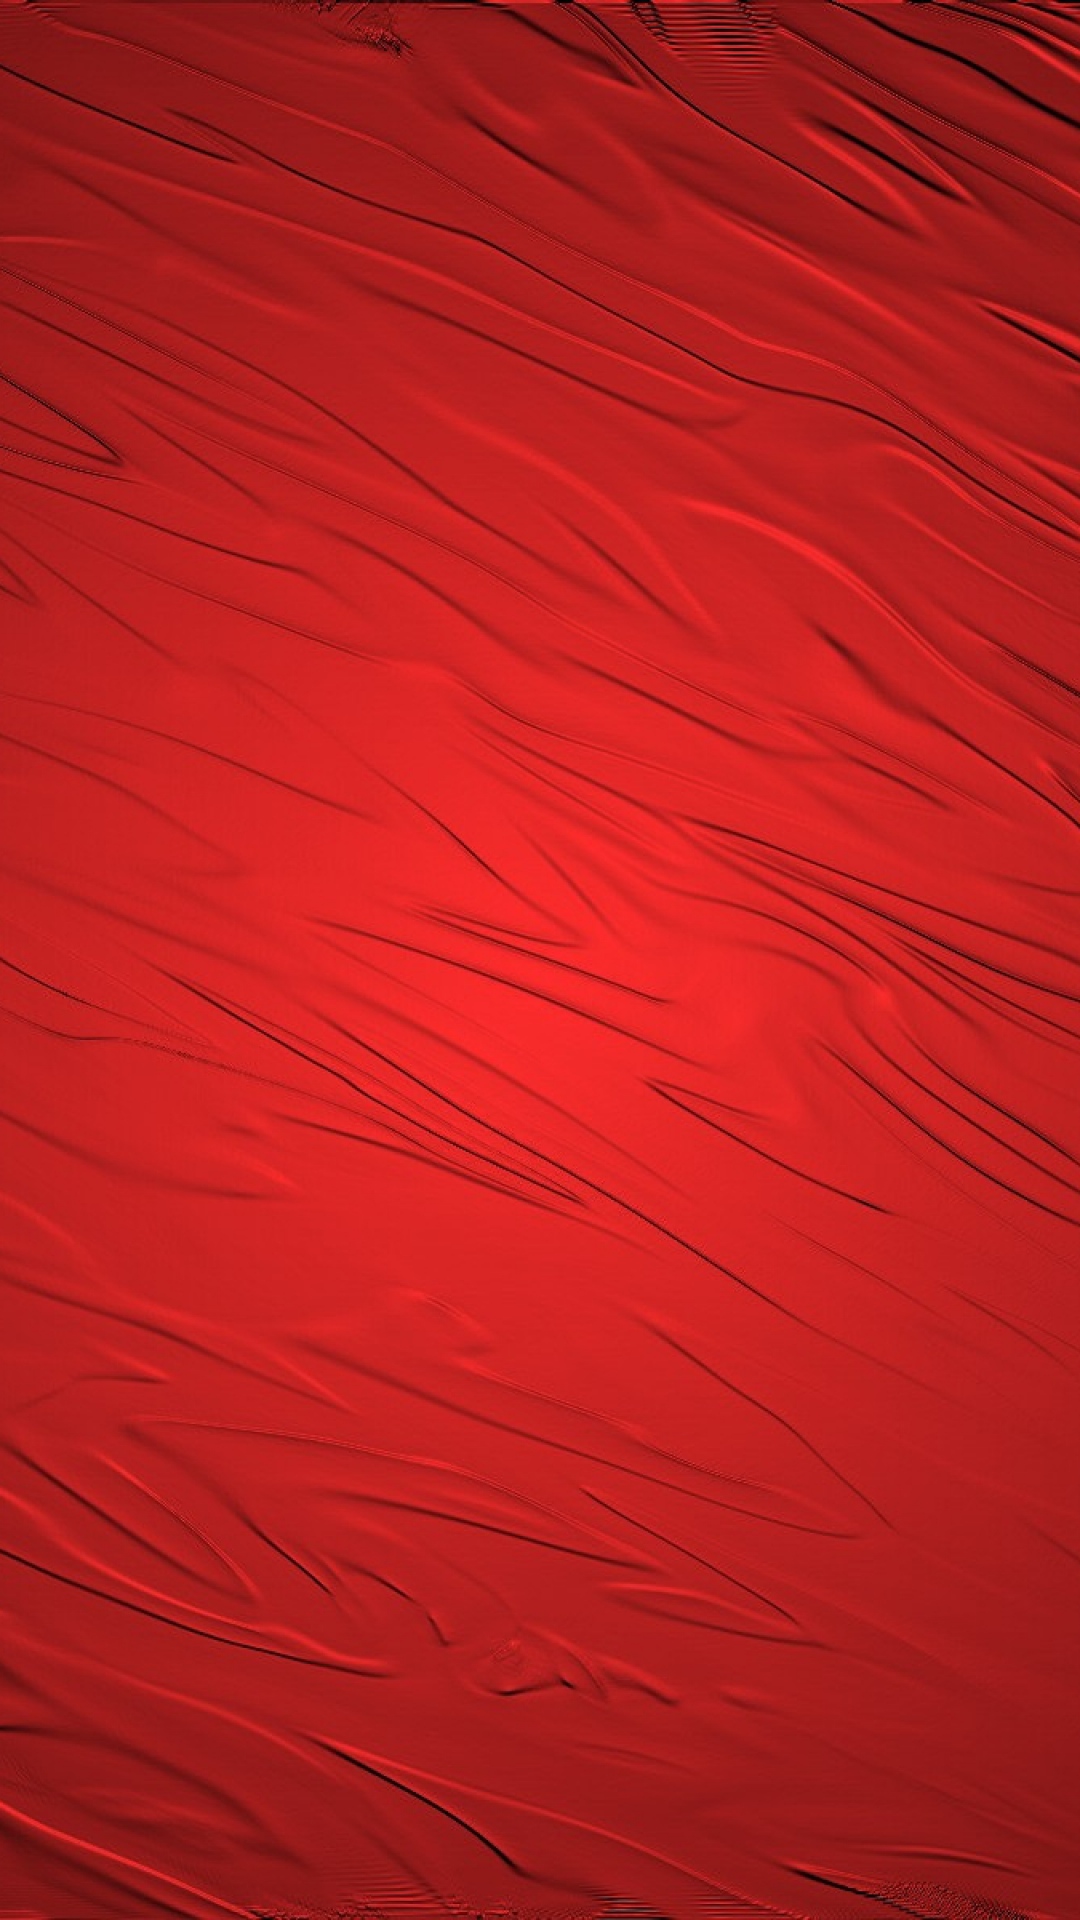 Download Gambar Wallpaper Hd Android Red terbaru 2020